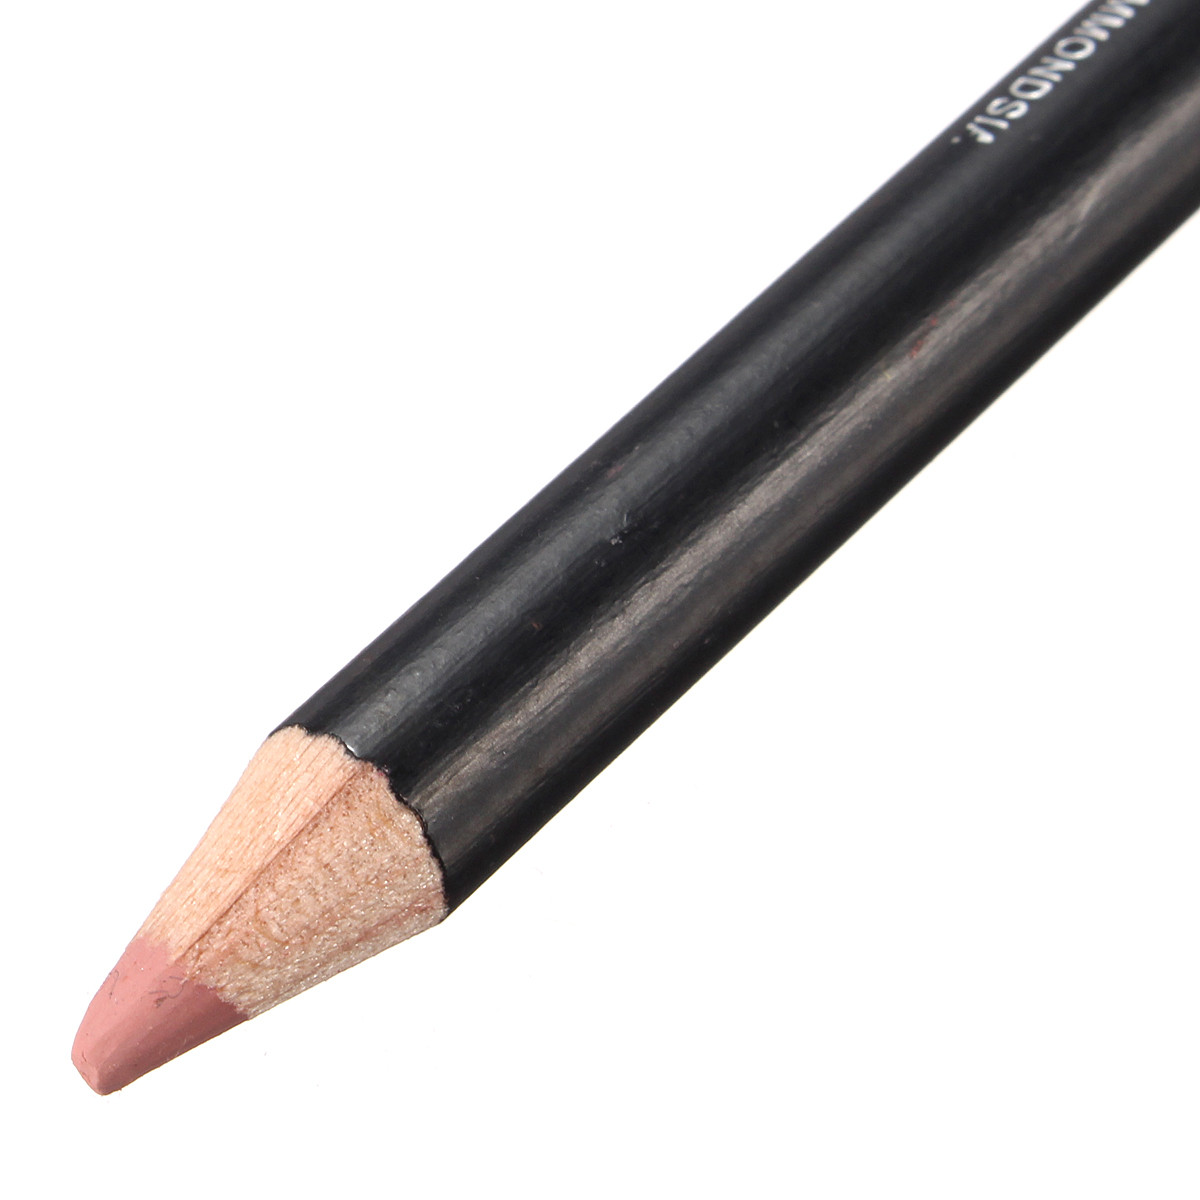 12 Colors Lip Liner Makeup Pencil Long Lasting Natural Waterproof Cosmetic Pen  